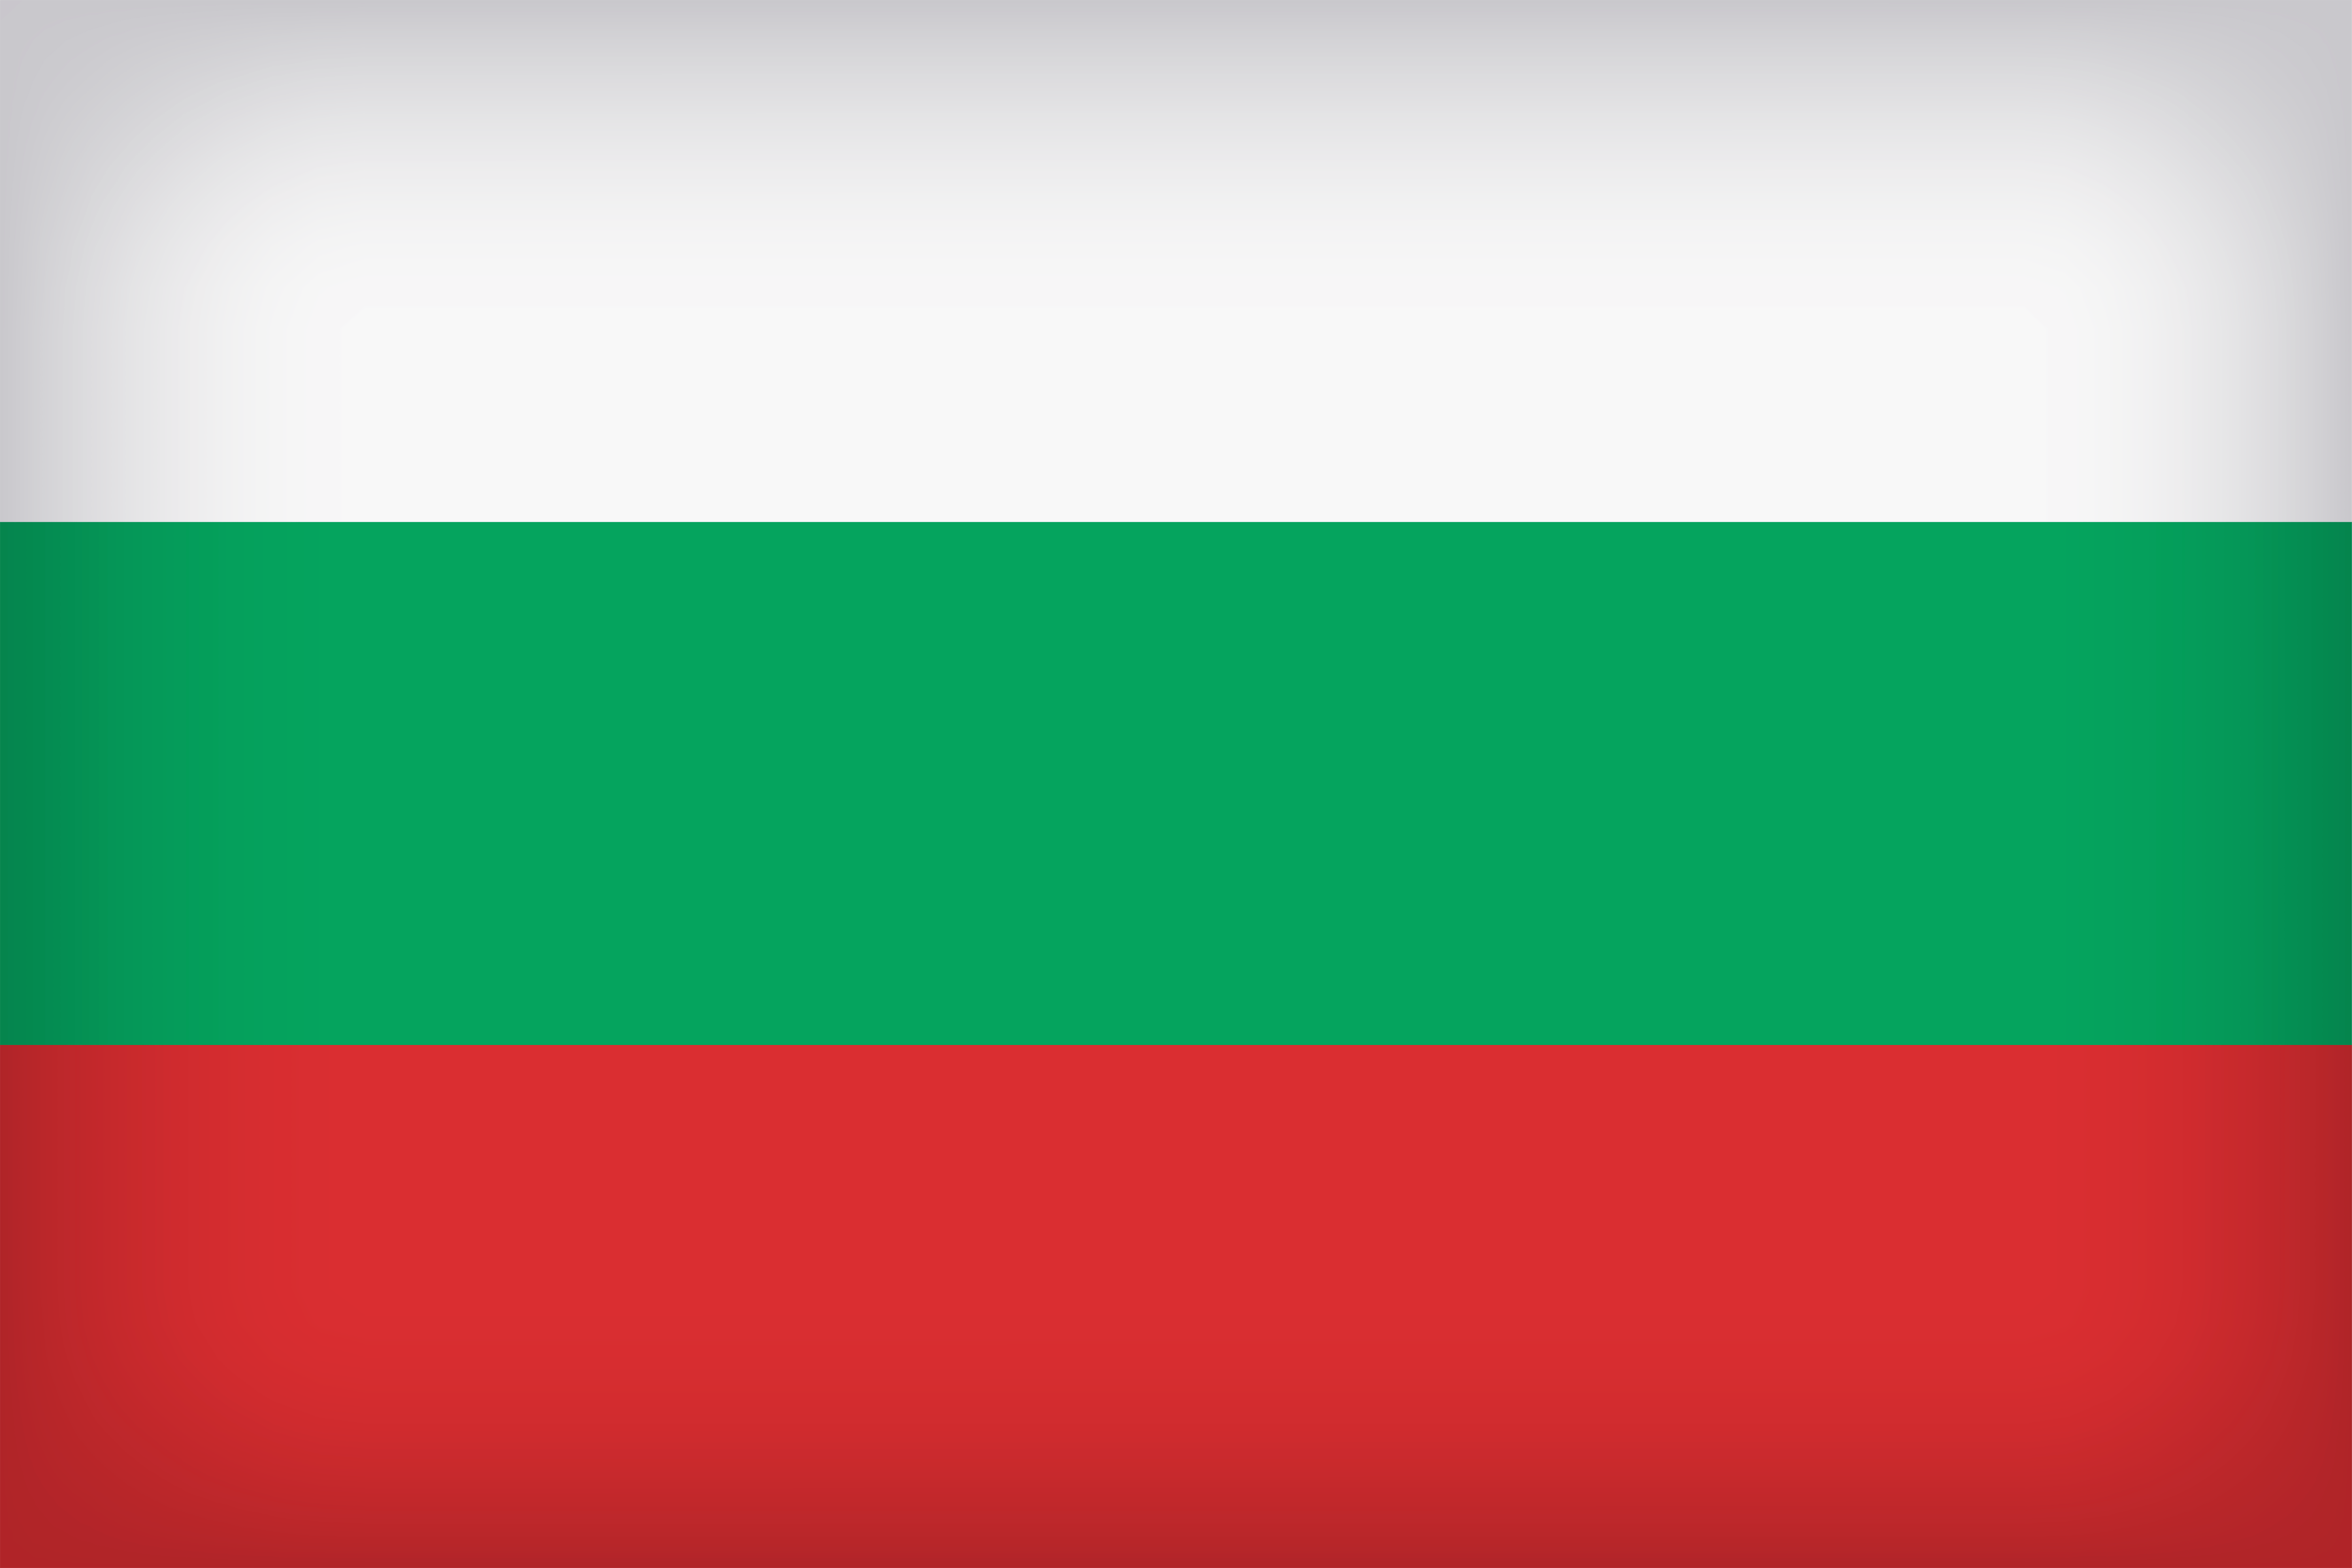 Bulgaria Large Flag Quality Image